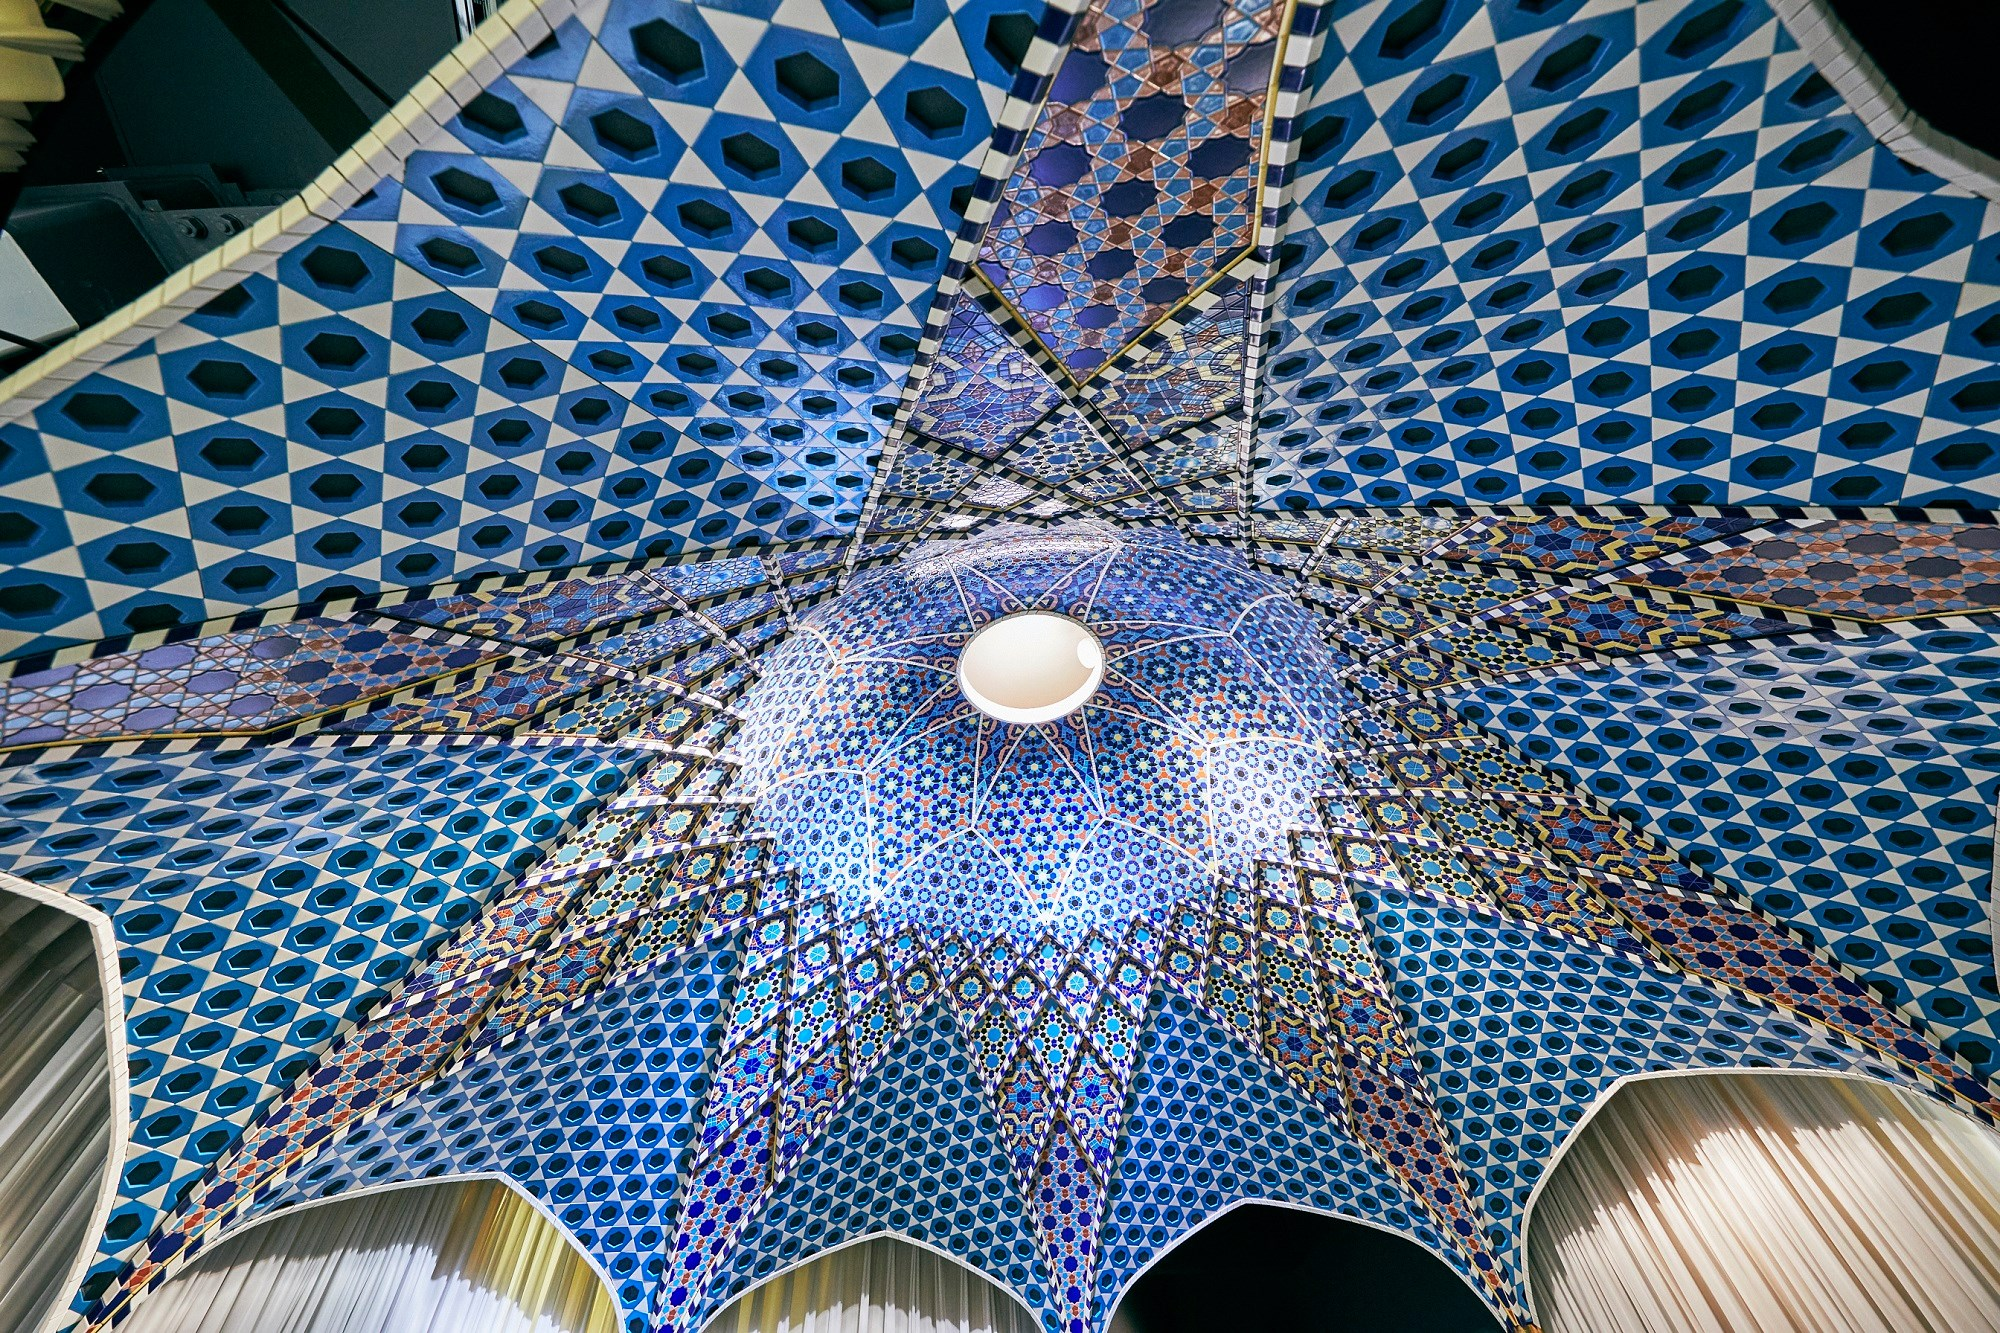 INAXライブミュージアム 世界のタイル博物館のイスラームのドーム天井